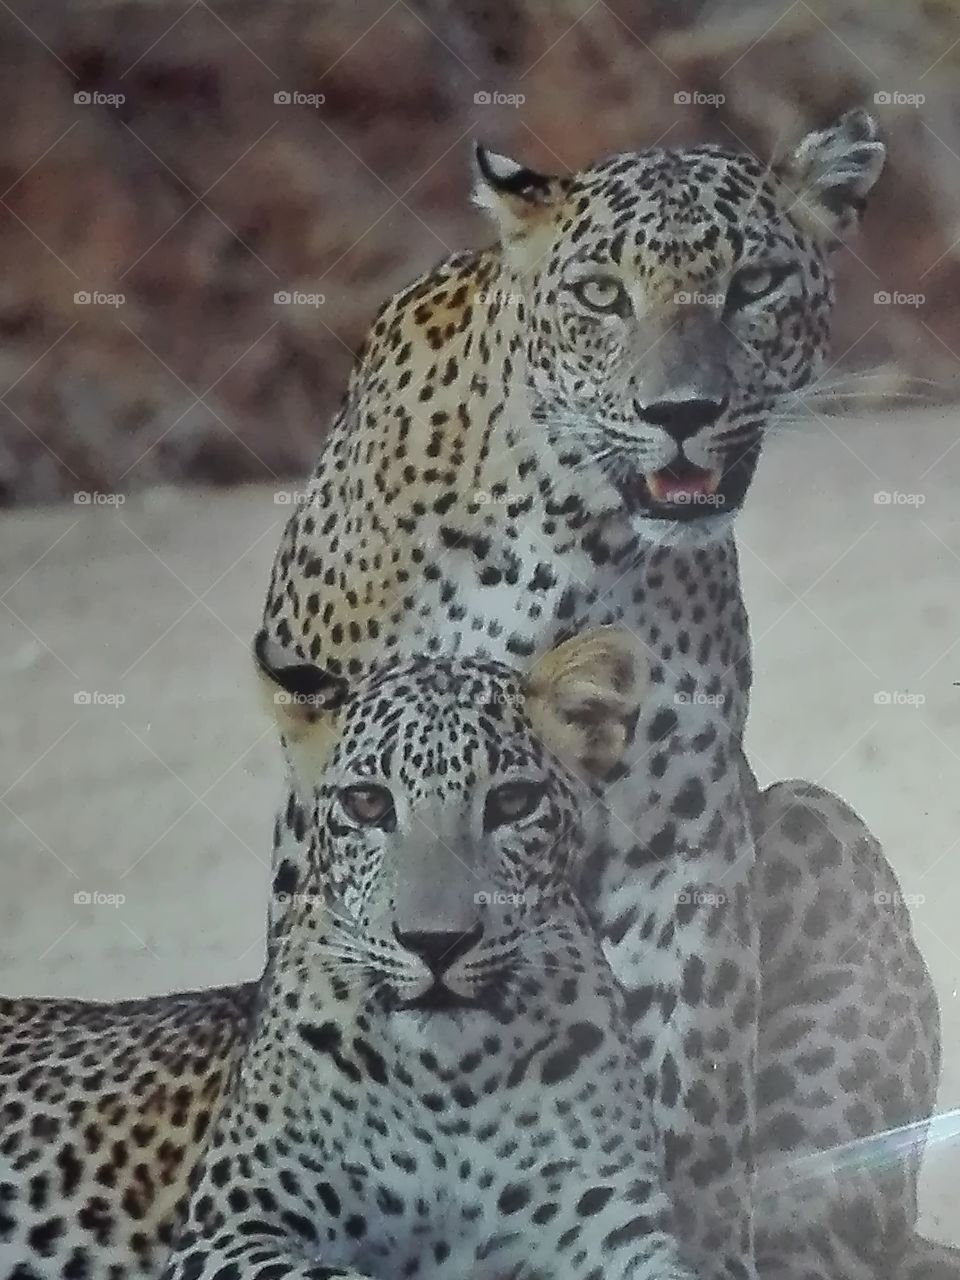 yala national park-Leopard